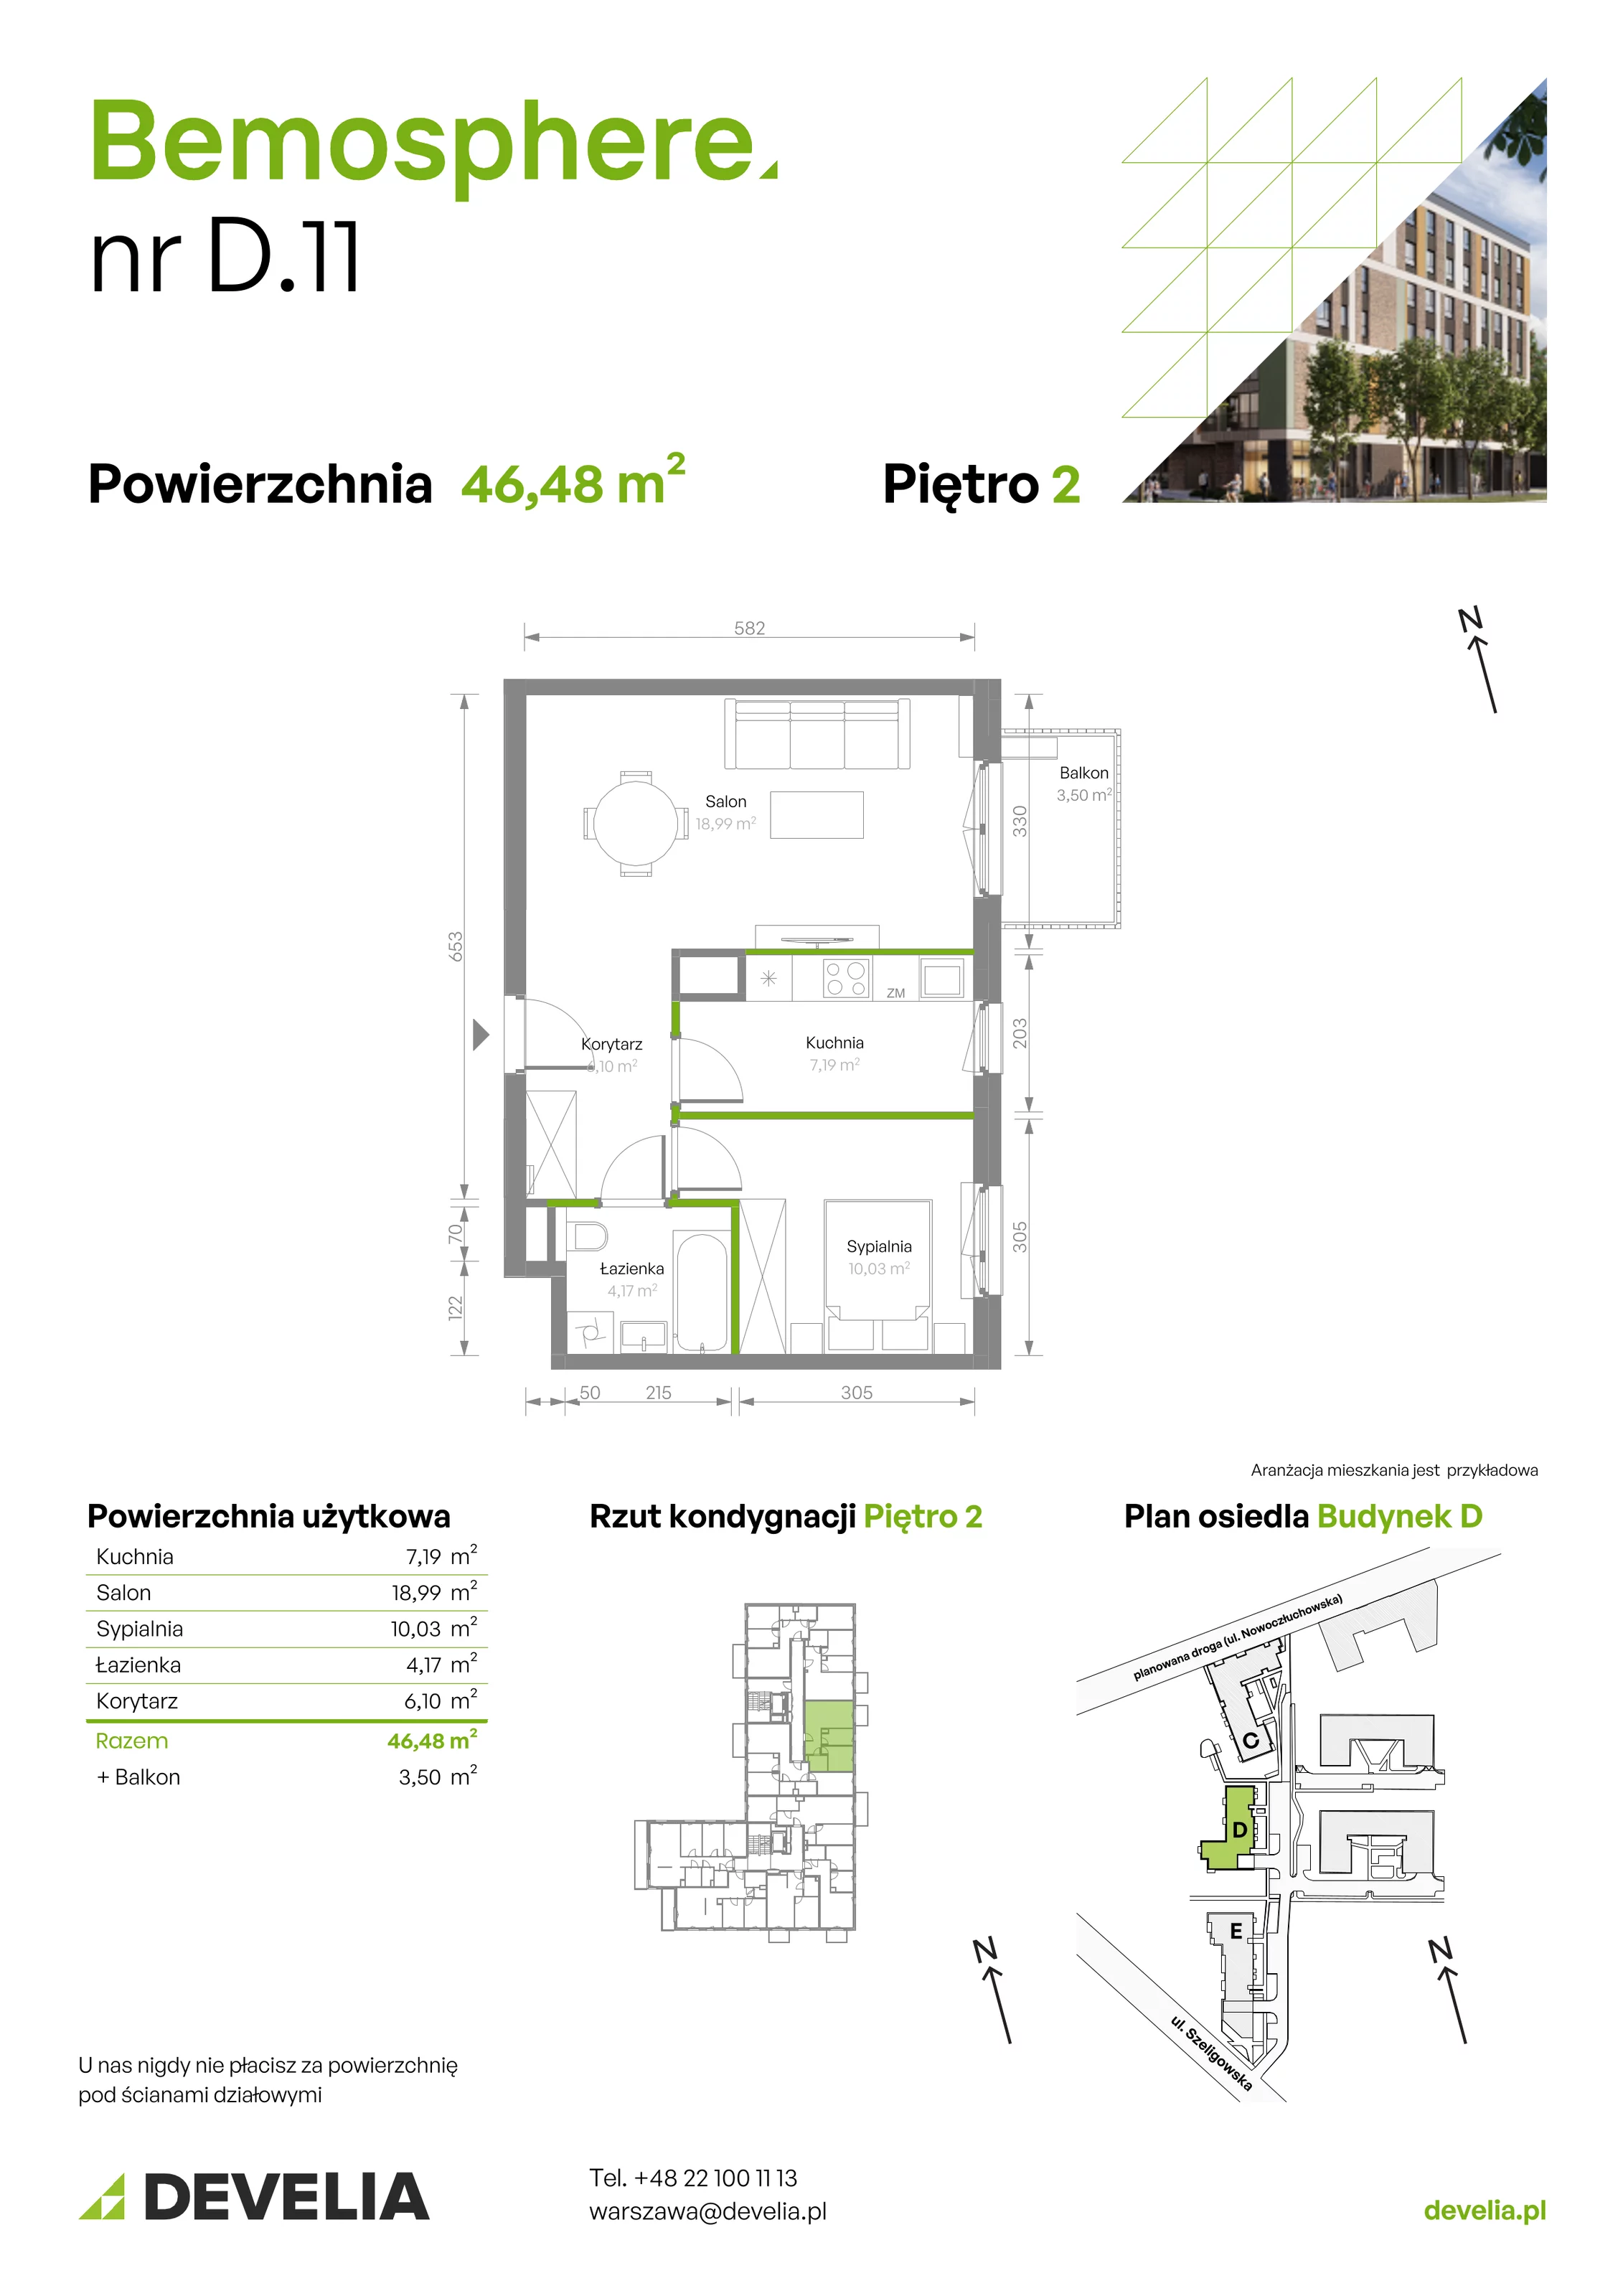 Mieszkanie 46,48 m², piętro 2, oferta nr D/011, Bemosphere, Warszawa, Bemowo, Chrzanów, ul. Szeligowska 24